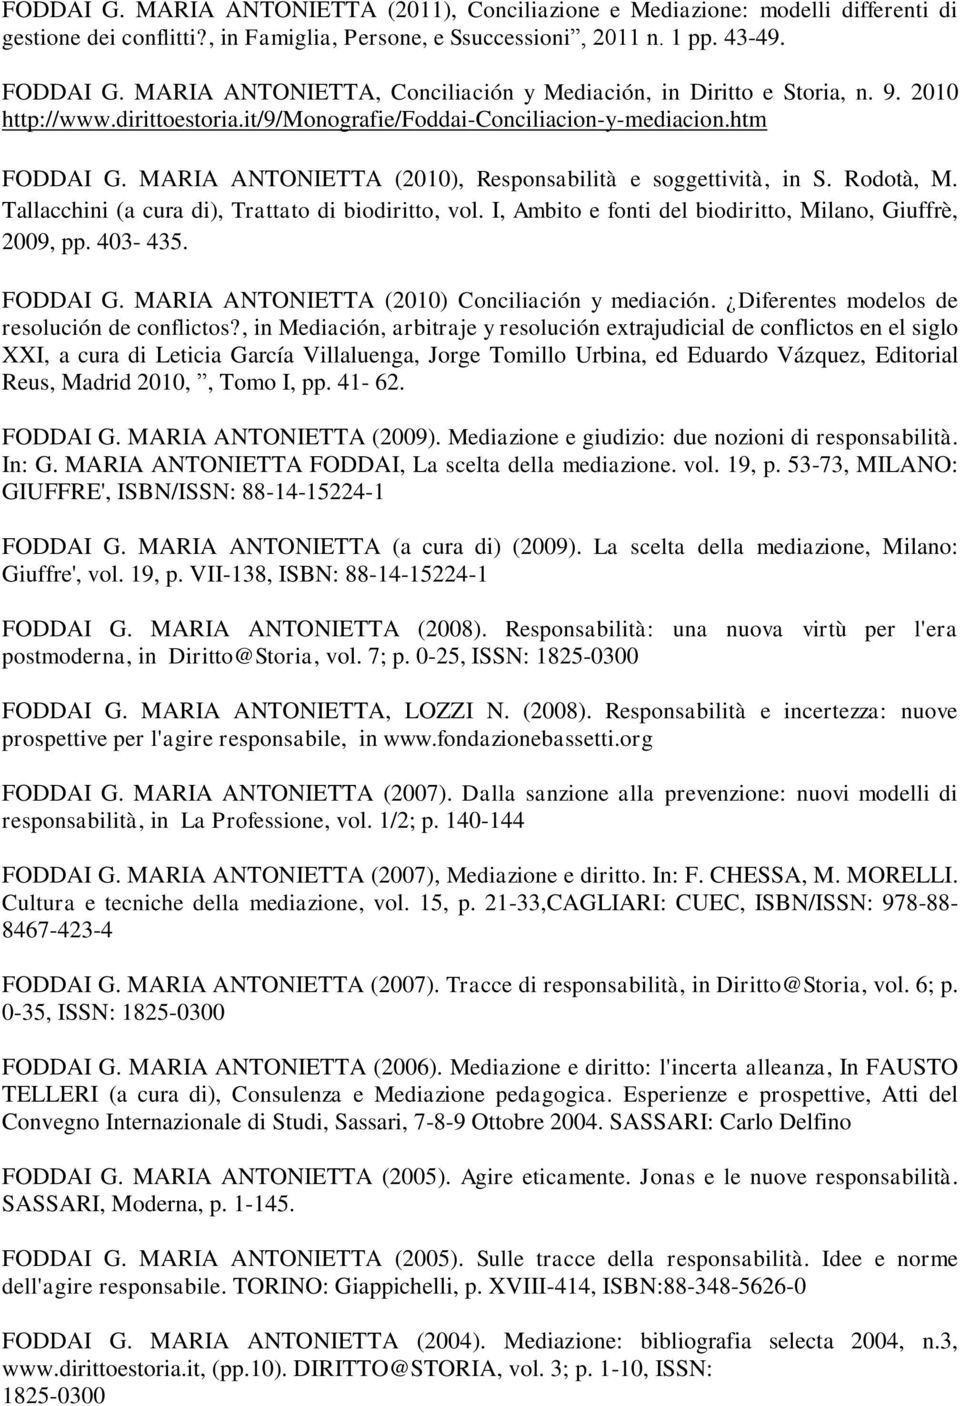 MARIA ANTONIETTA (2010), Responsabilità e soggettività, in S. Rodotà, M. Tallacchini (a cura di), Trattato di biodiritto, vol. I, Ambito e fonti del biodiritto, Milano, Giuffrè, 2009, pp. 403-435.